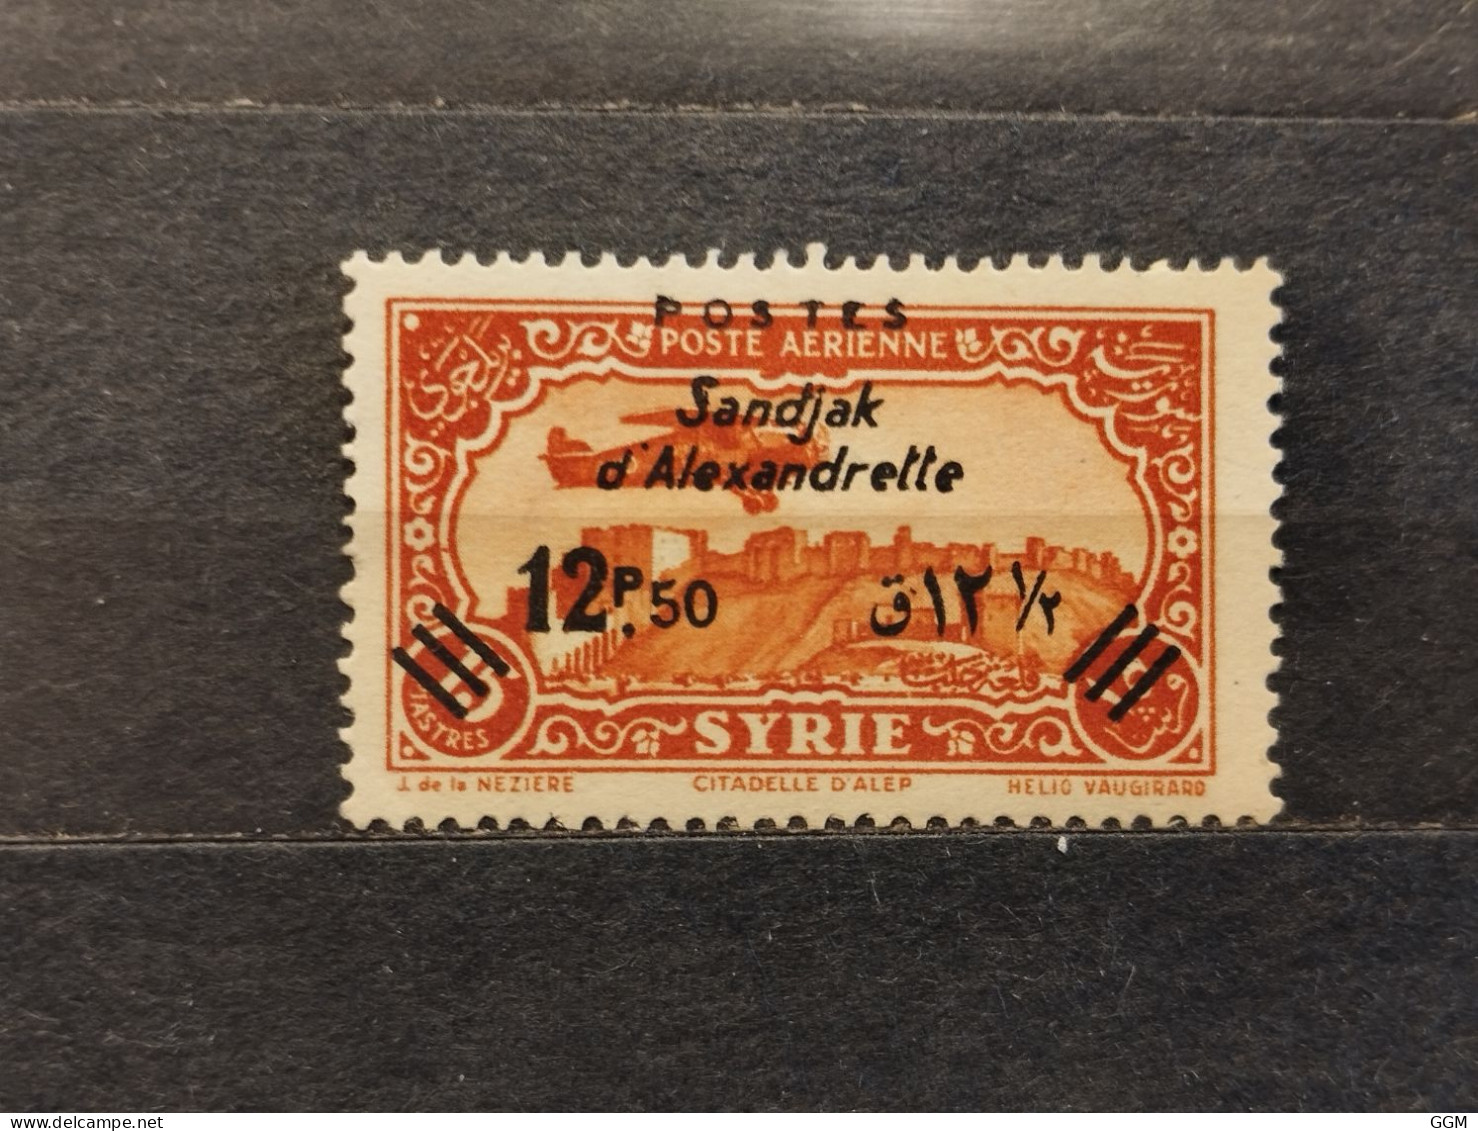 Francia/France. Syria/Syrie. 1938. Sandjak D'Alexandrette. Timbres De Syrie 1930/1932 Surchargés. MH - Unused Stamps